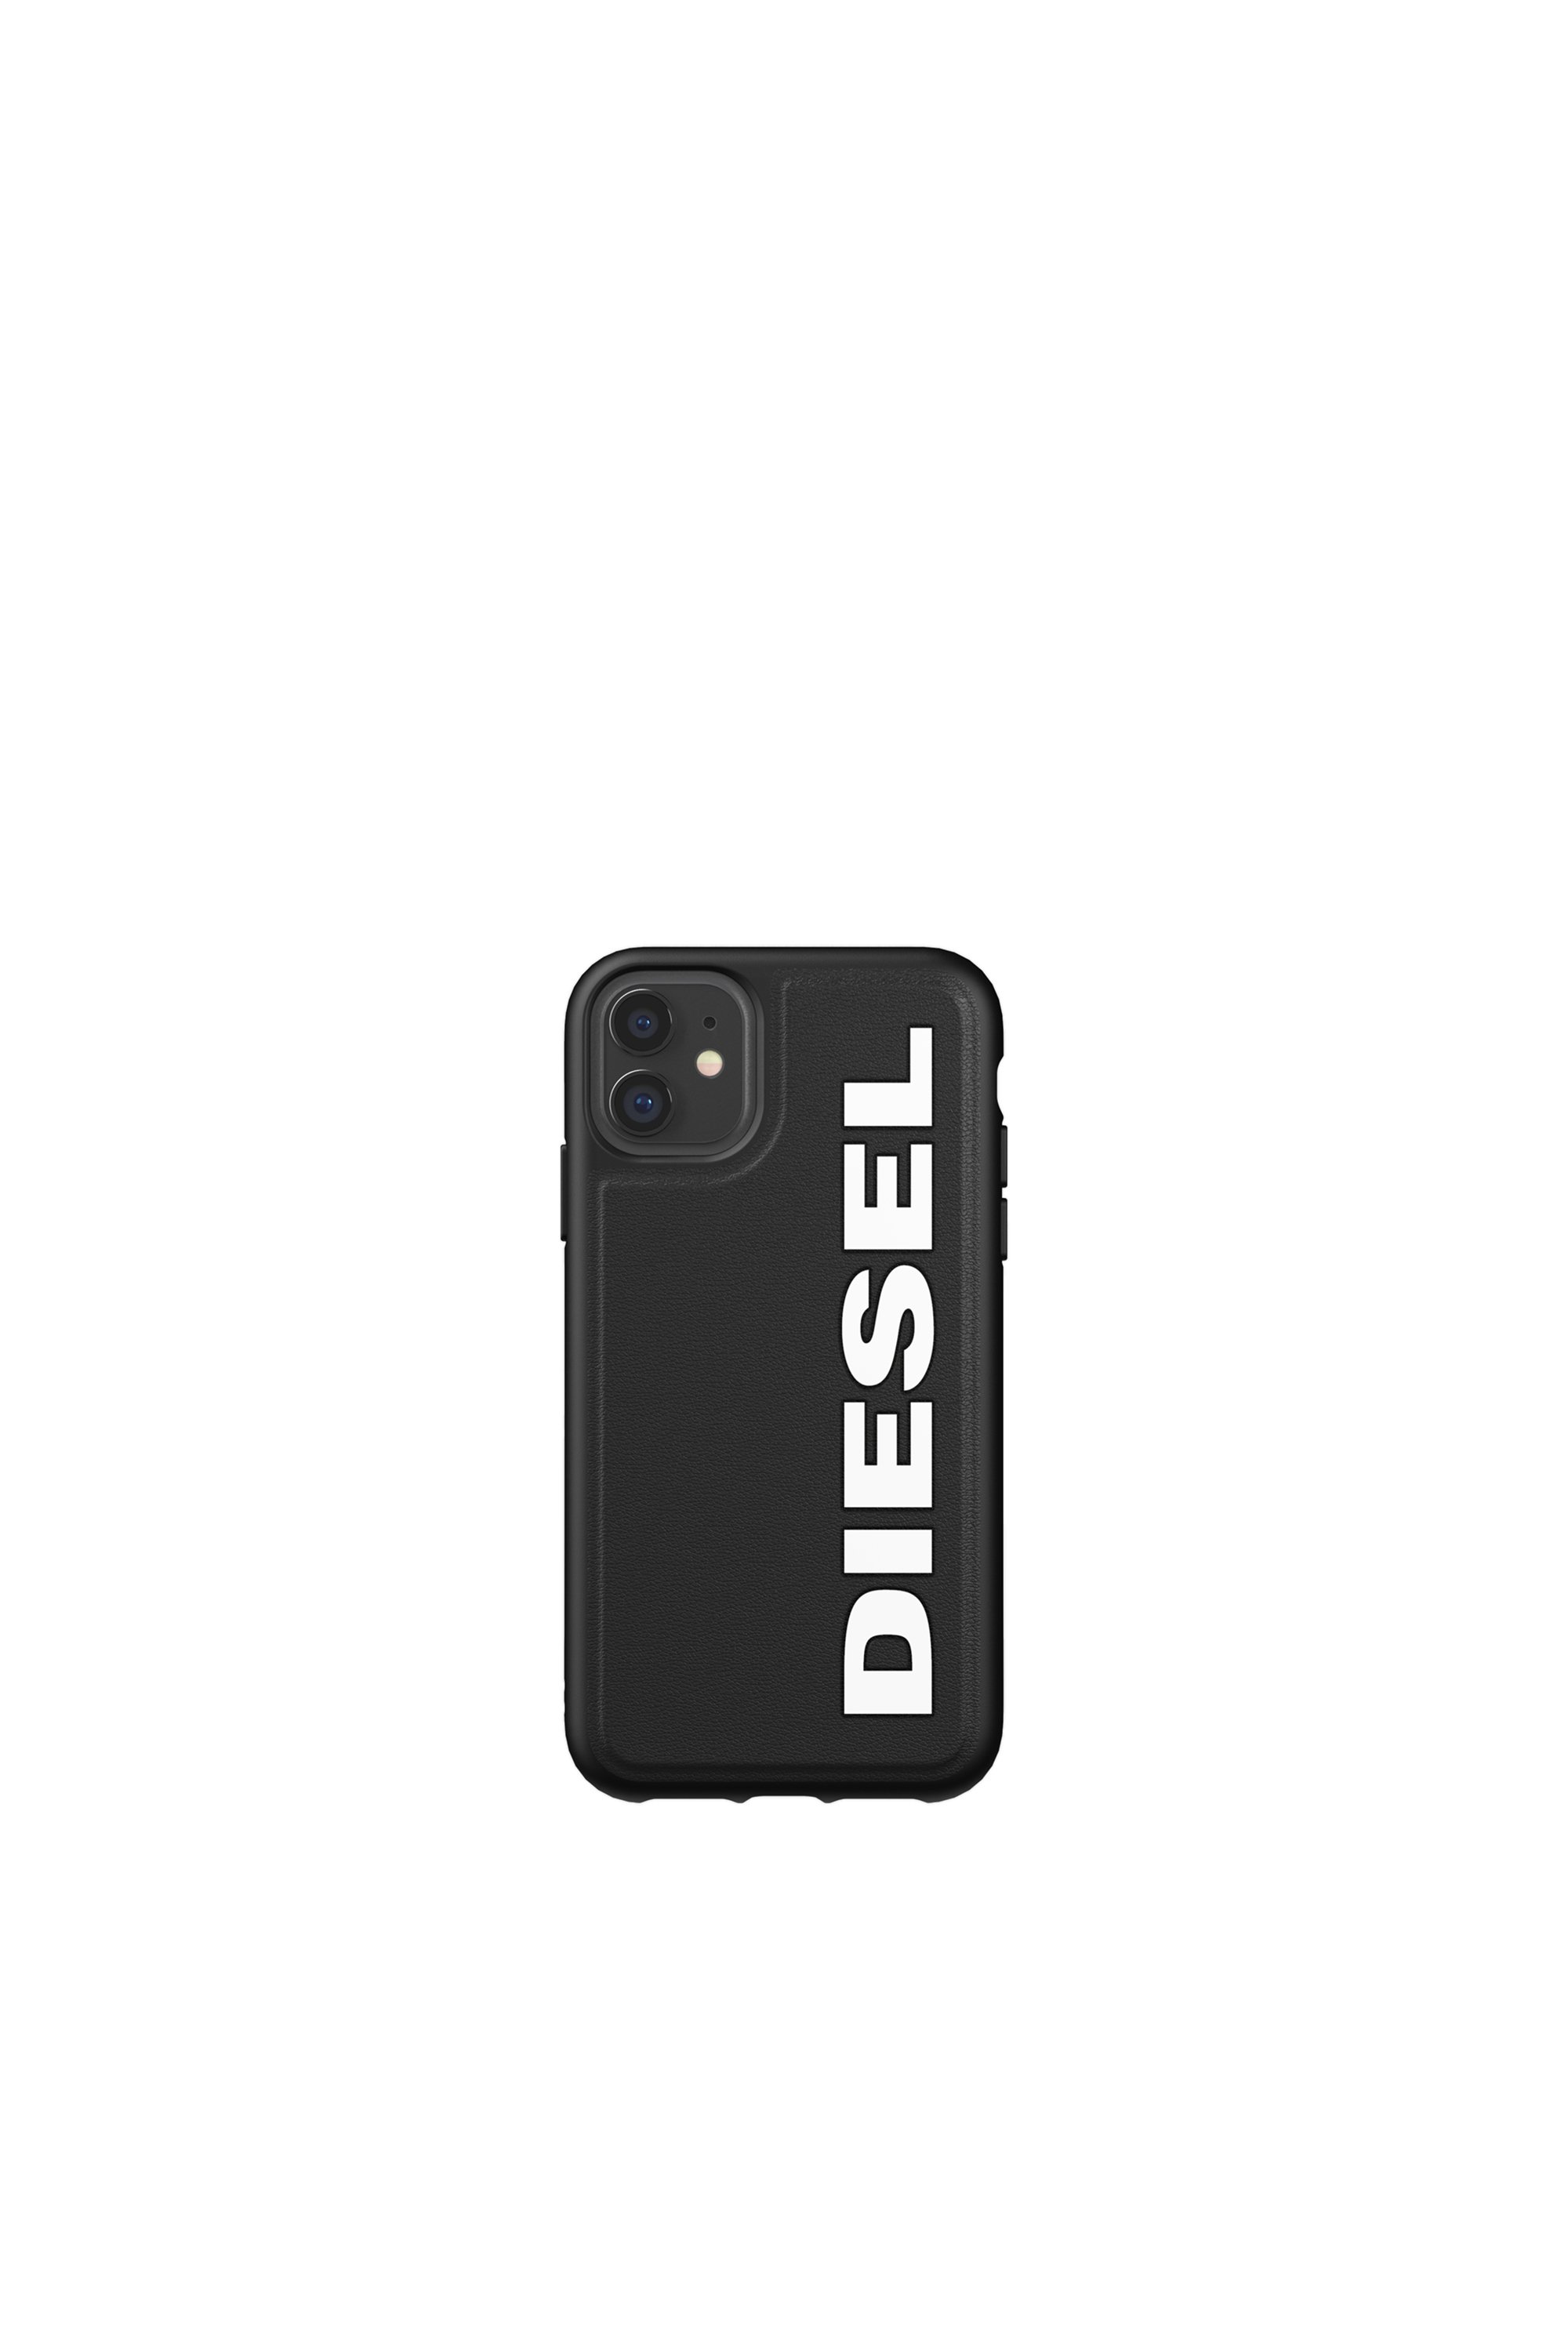 Diesel - 41981, Black - Image 2